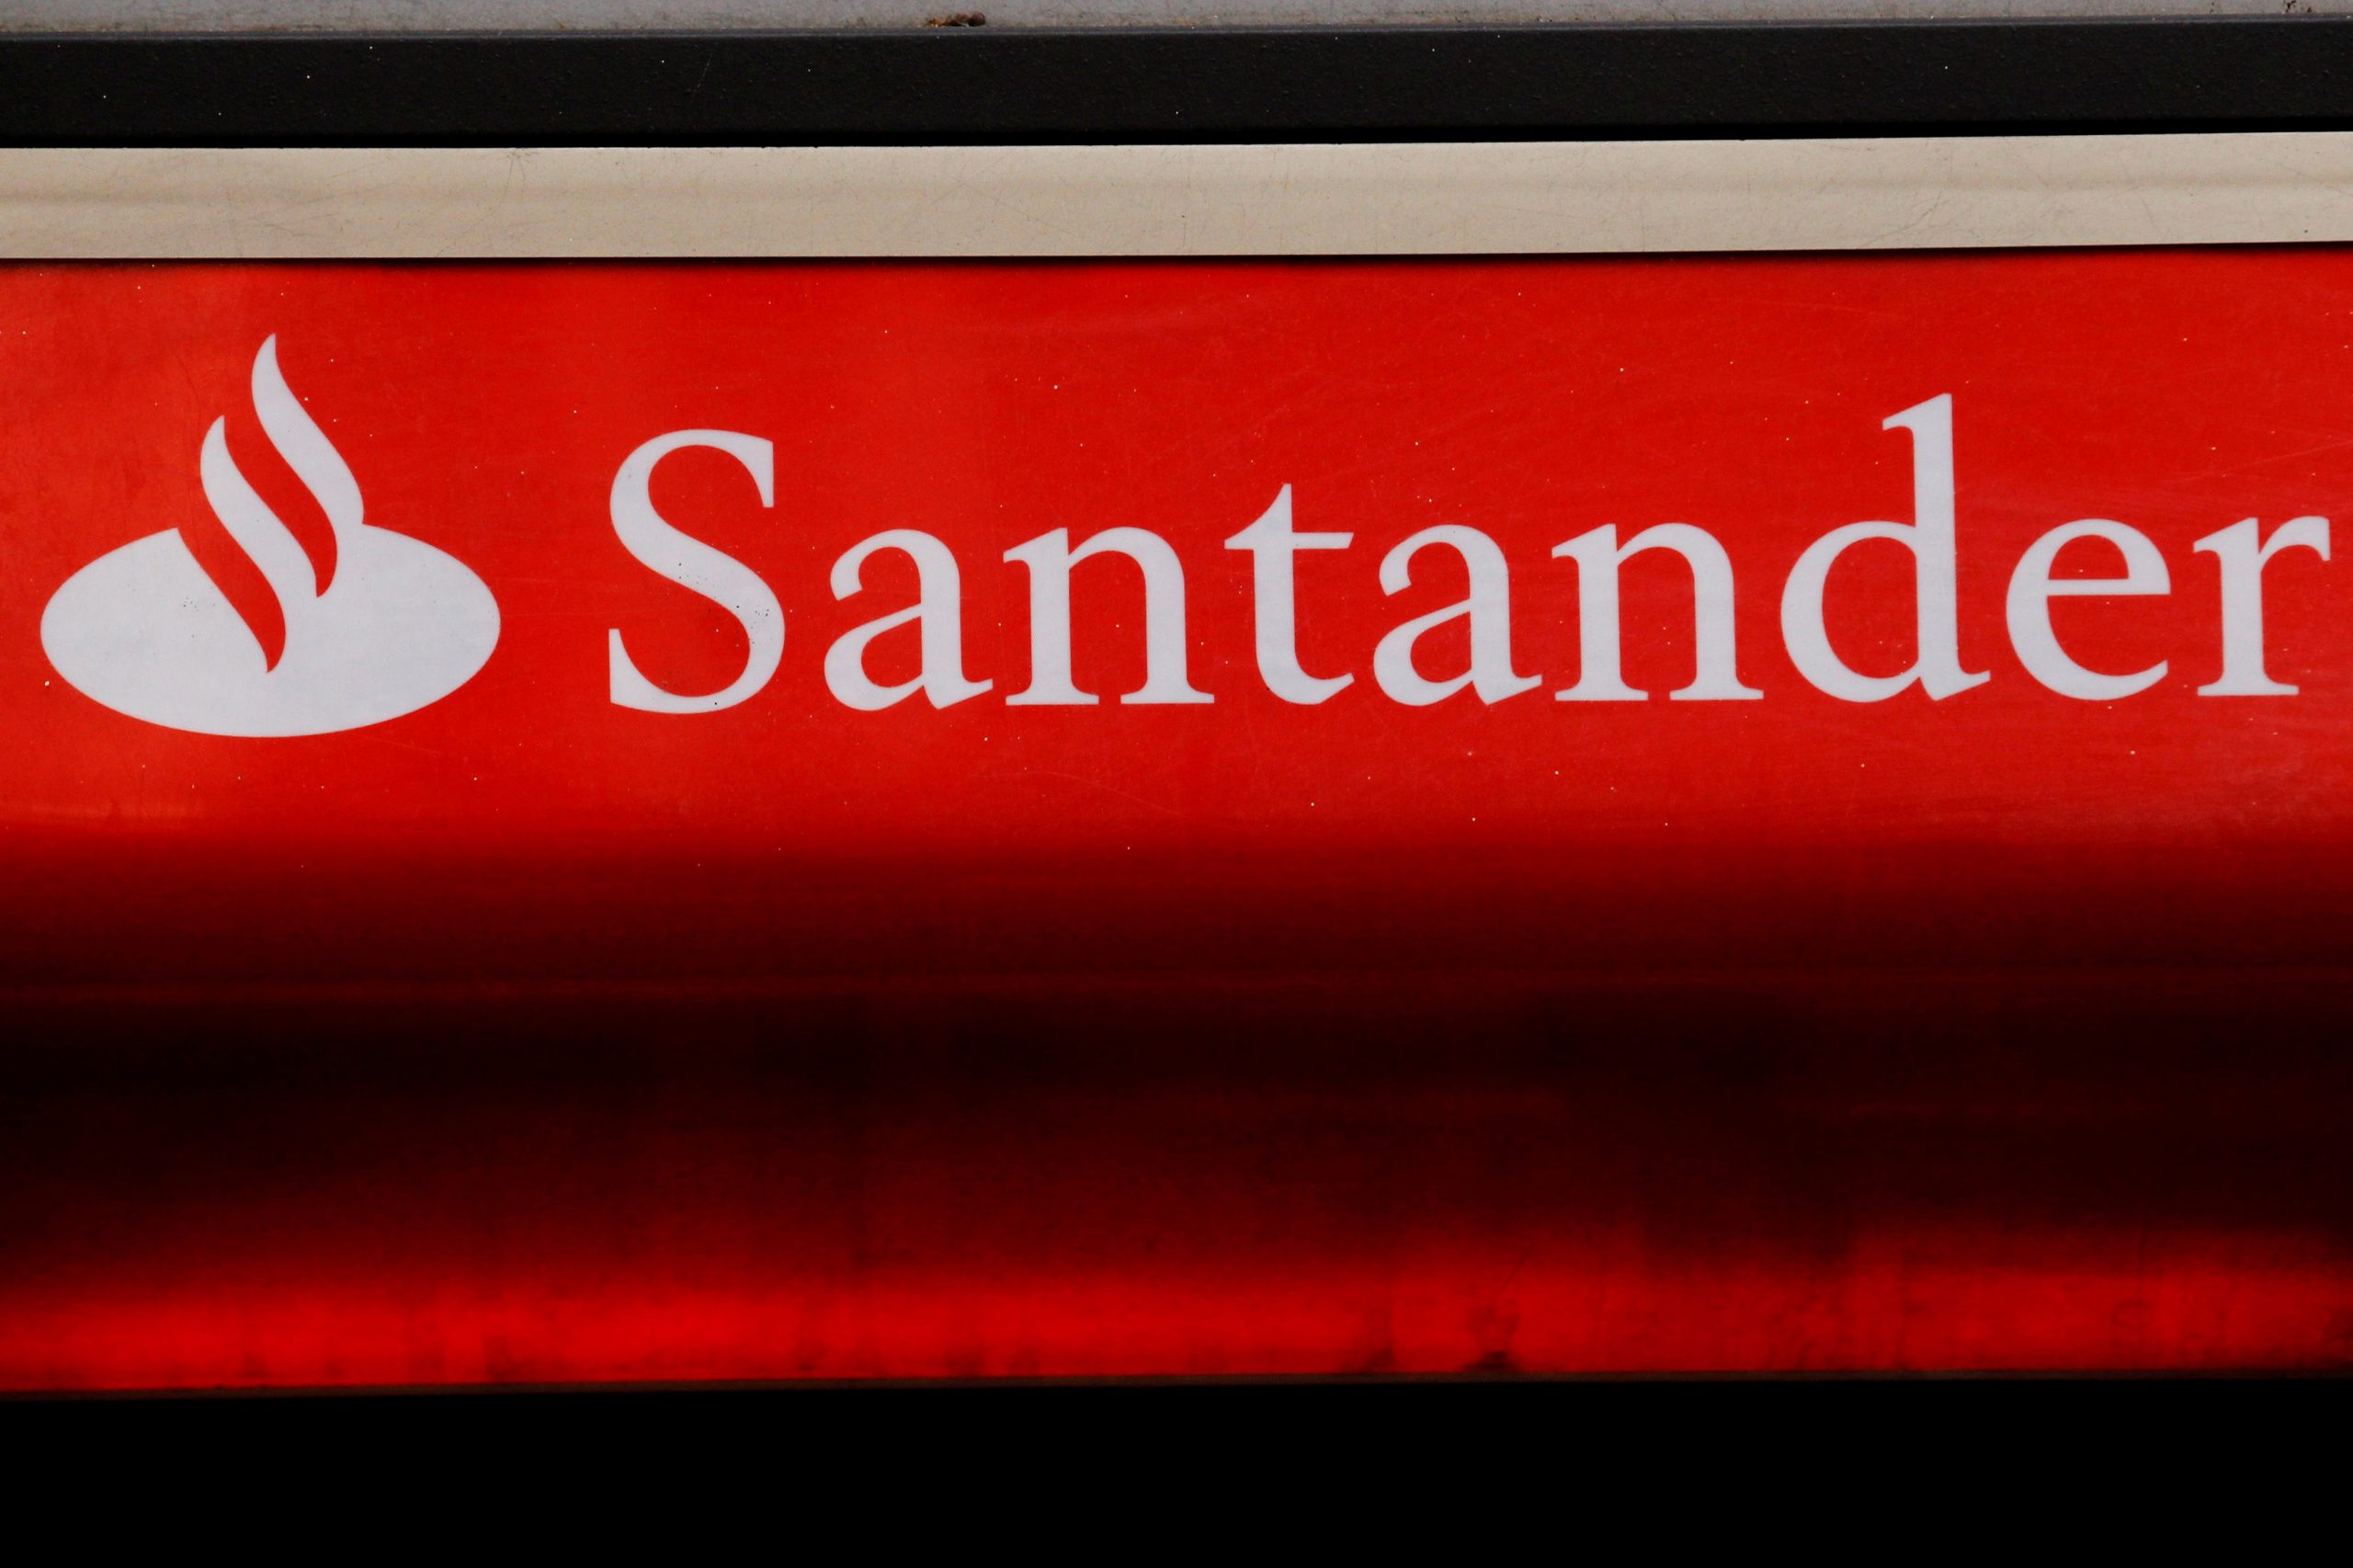 Santander anuncia compra de 60% da Toro Investimentos e fusão com a Pi para formar nova plataforma